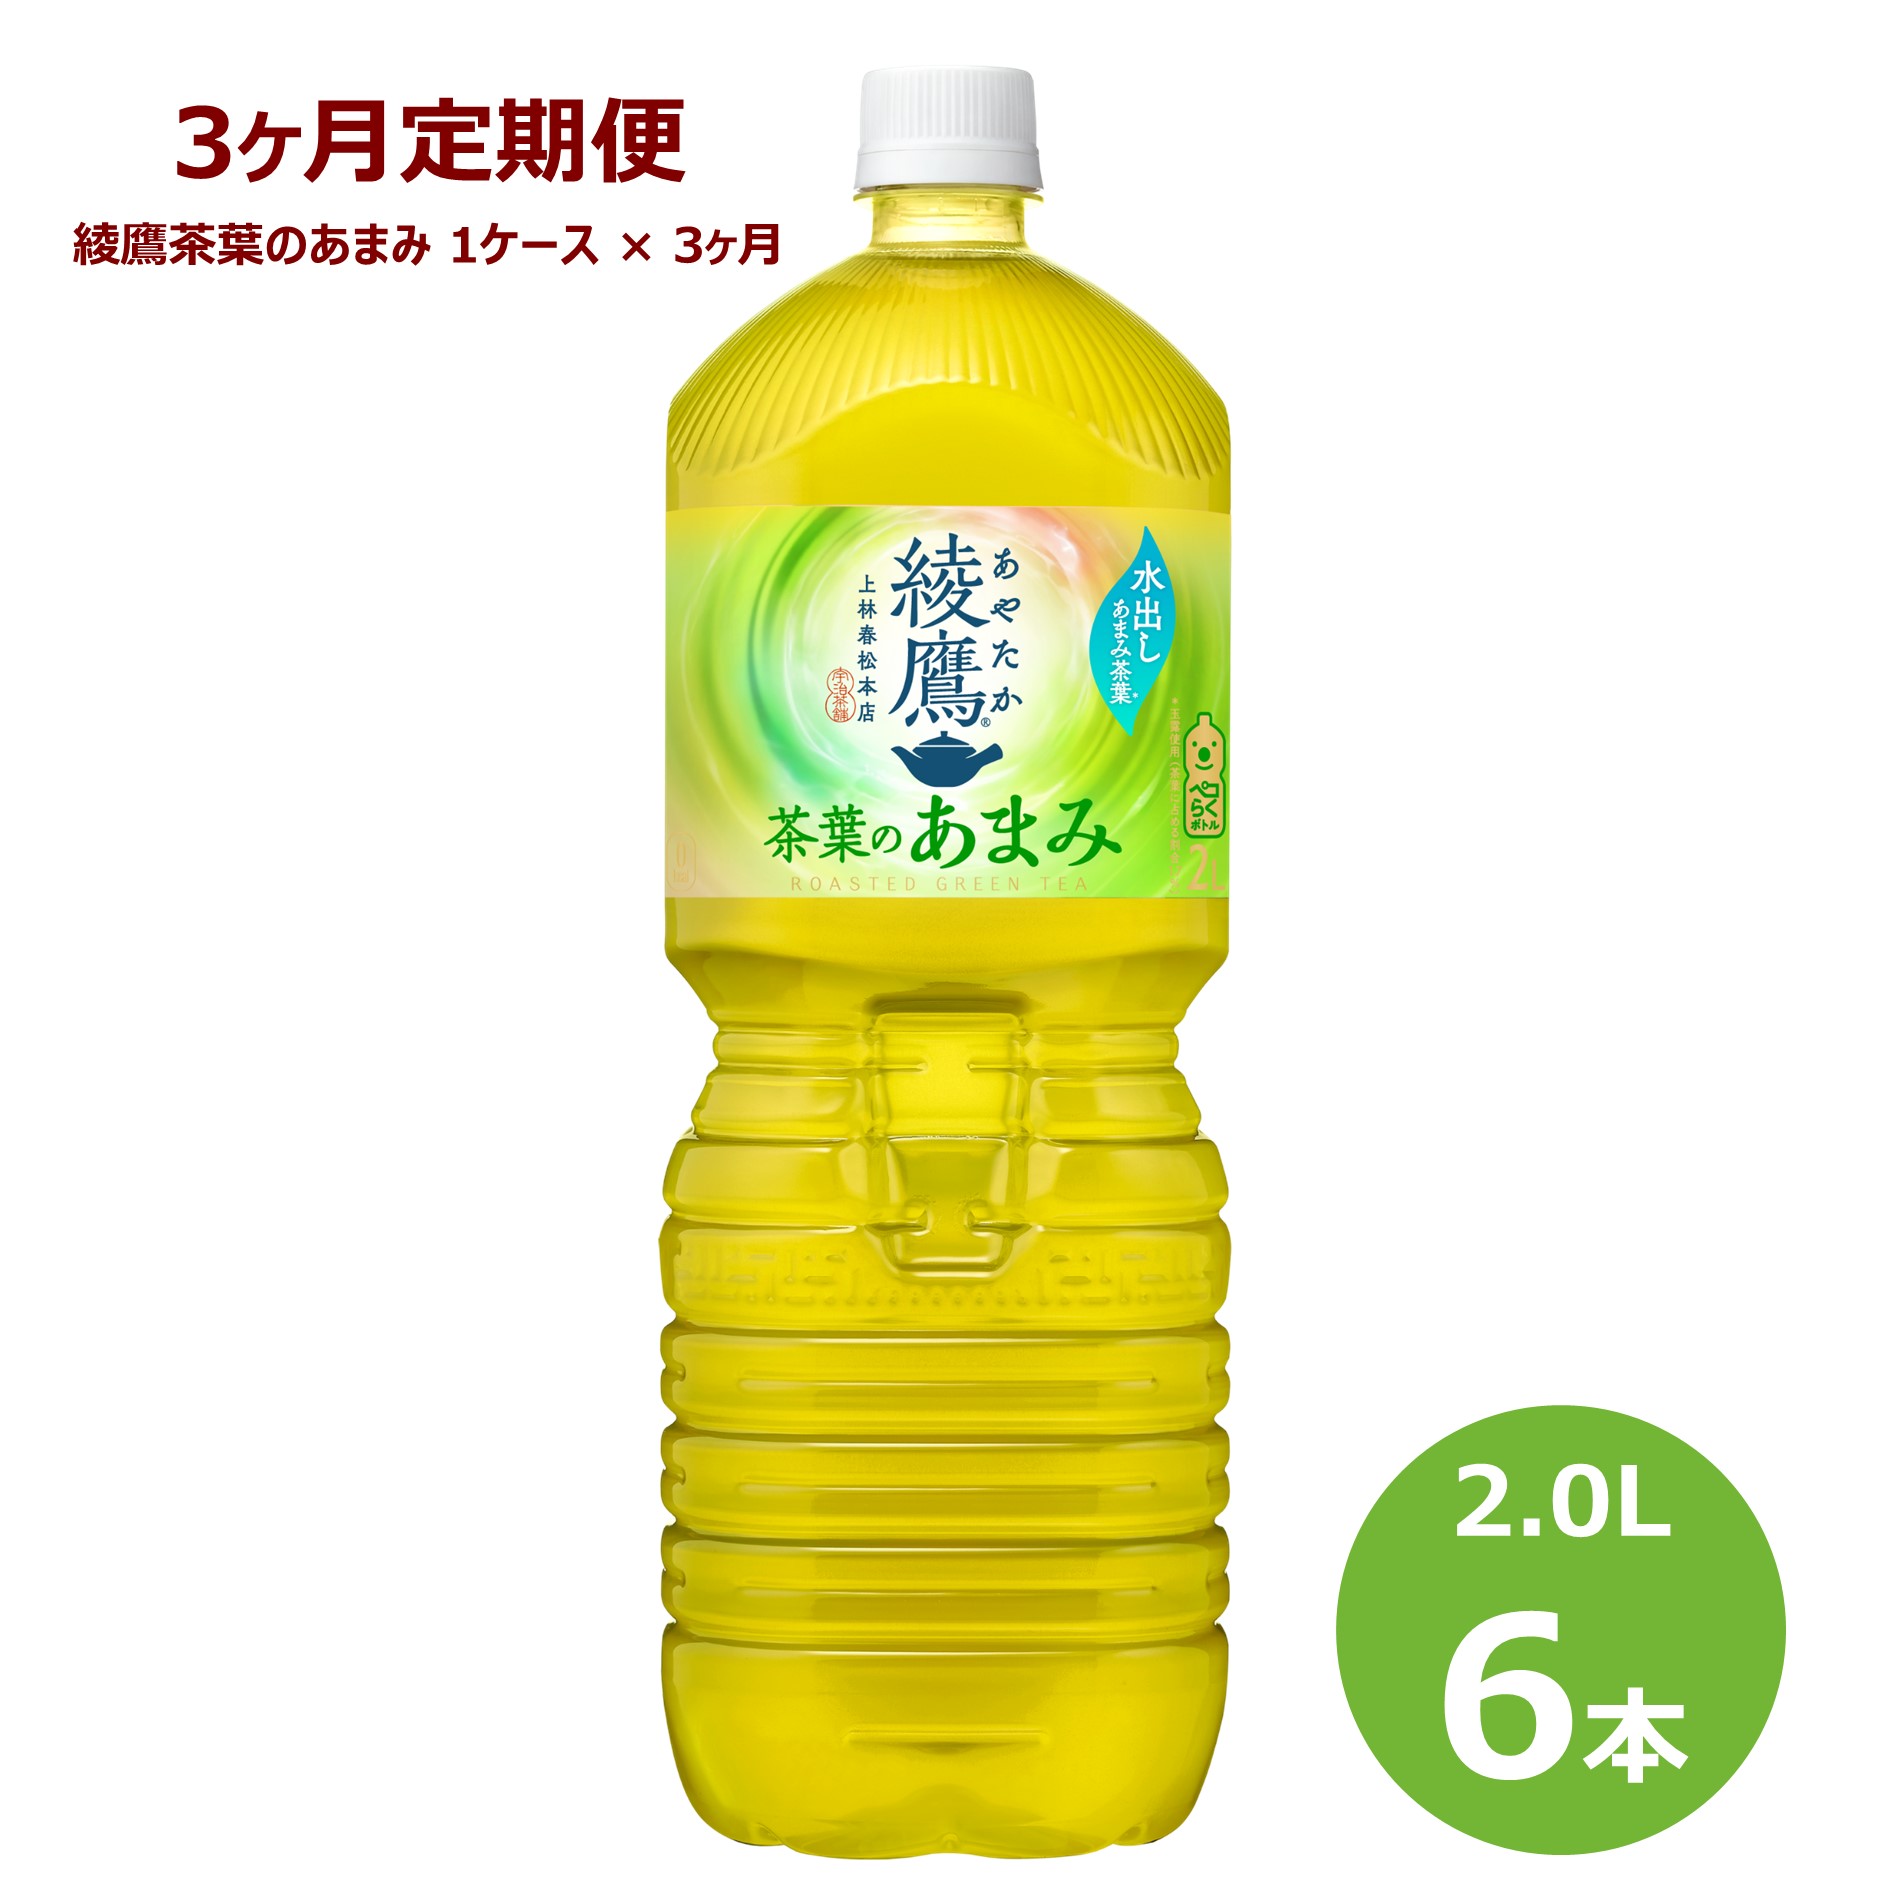 【3ヶ月定期便】綾鷹茶葉のあまみ 2L ペットボトル 6本セット お茶 緑茶 コカ・コーラ